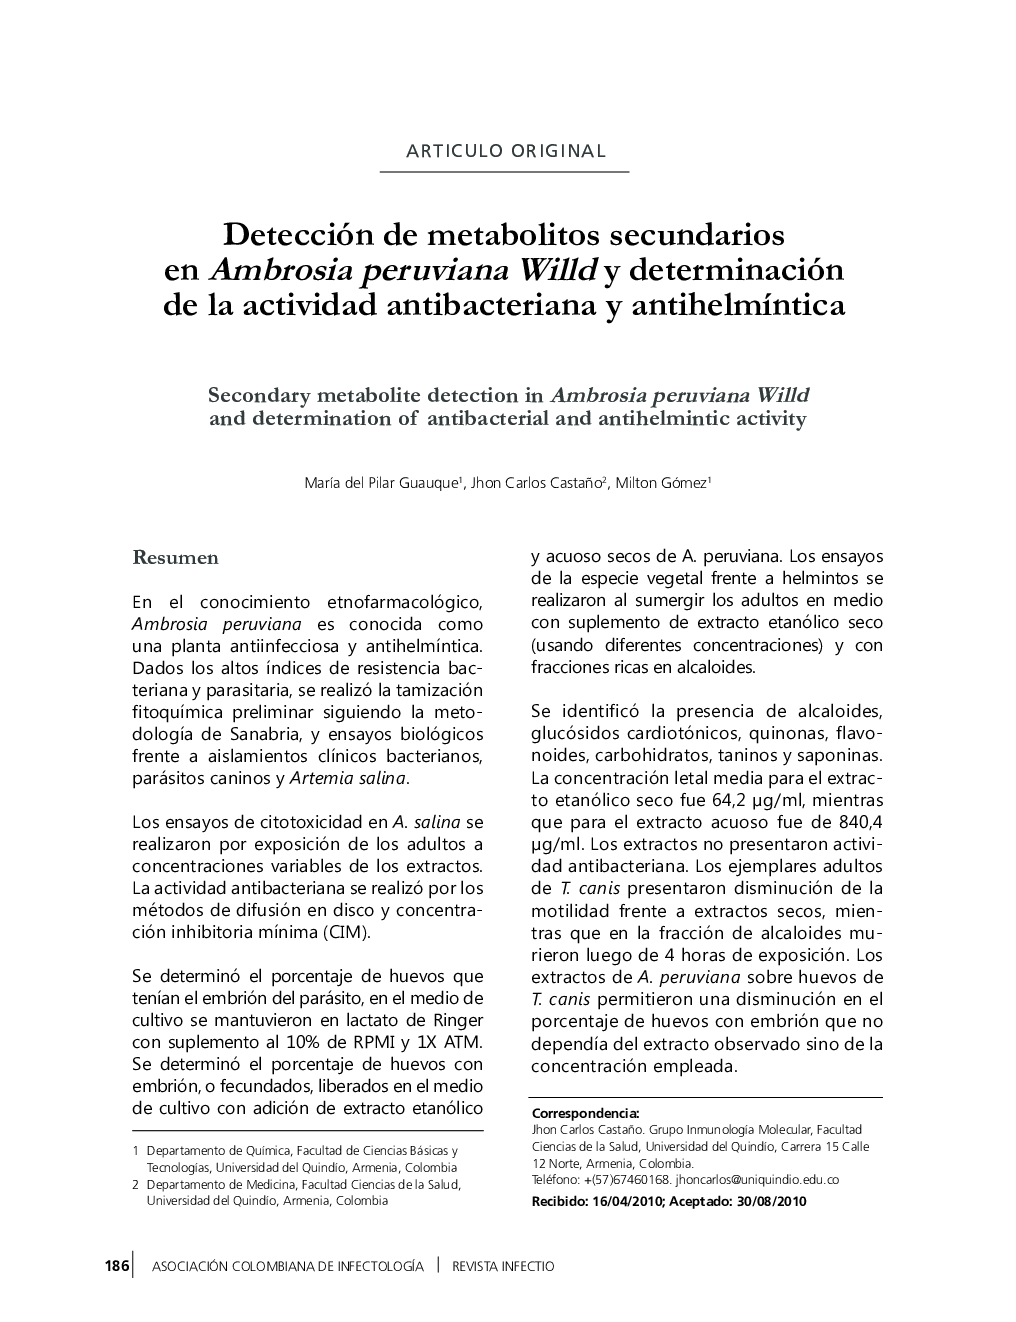 Detección de metabolitos secundarios en Ambrosia peruviana Willd y determinación de la actividad antibacteriana y antihelmíntica